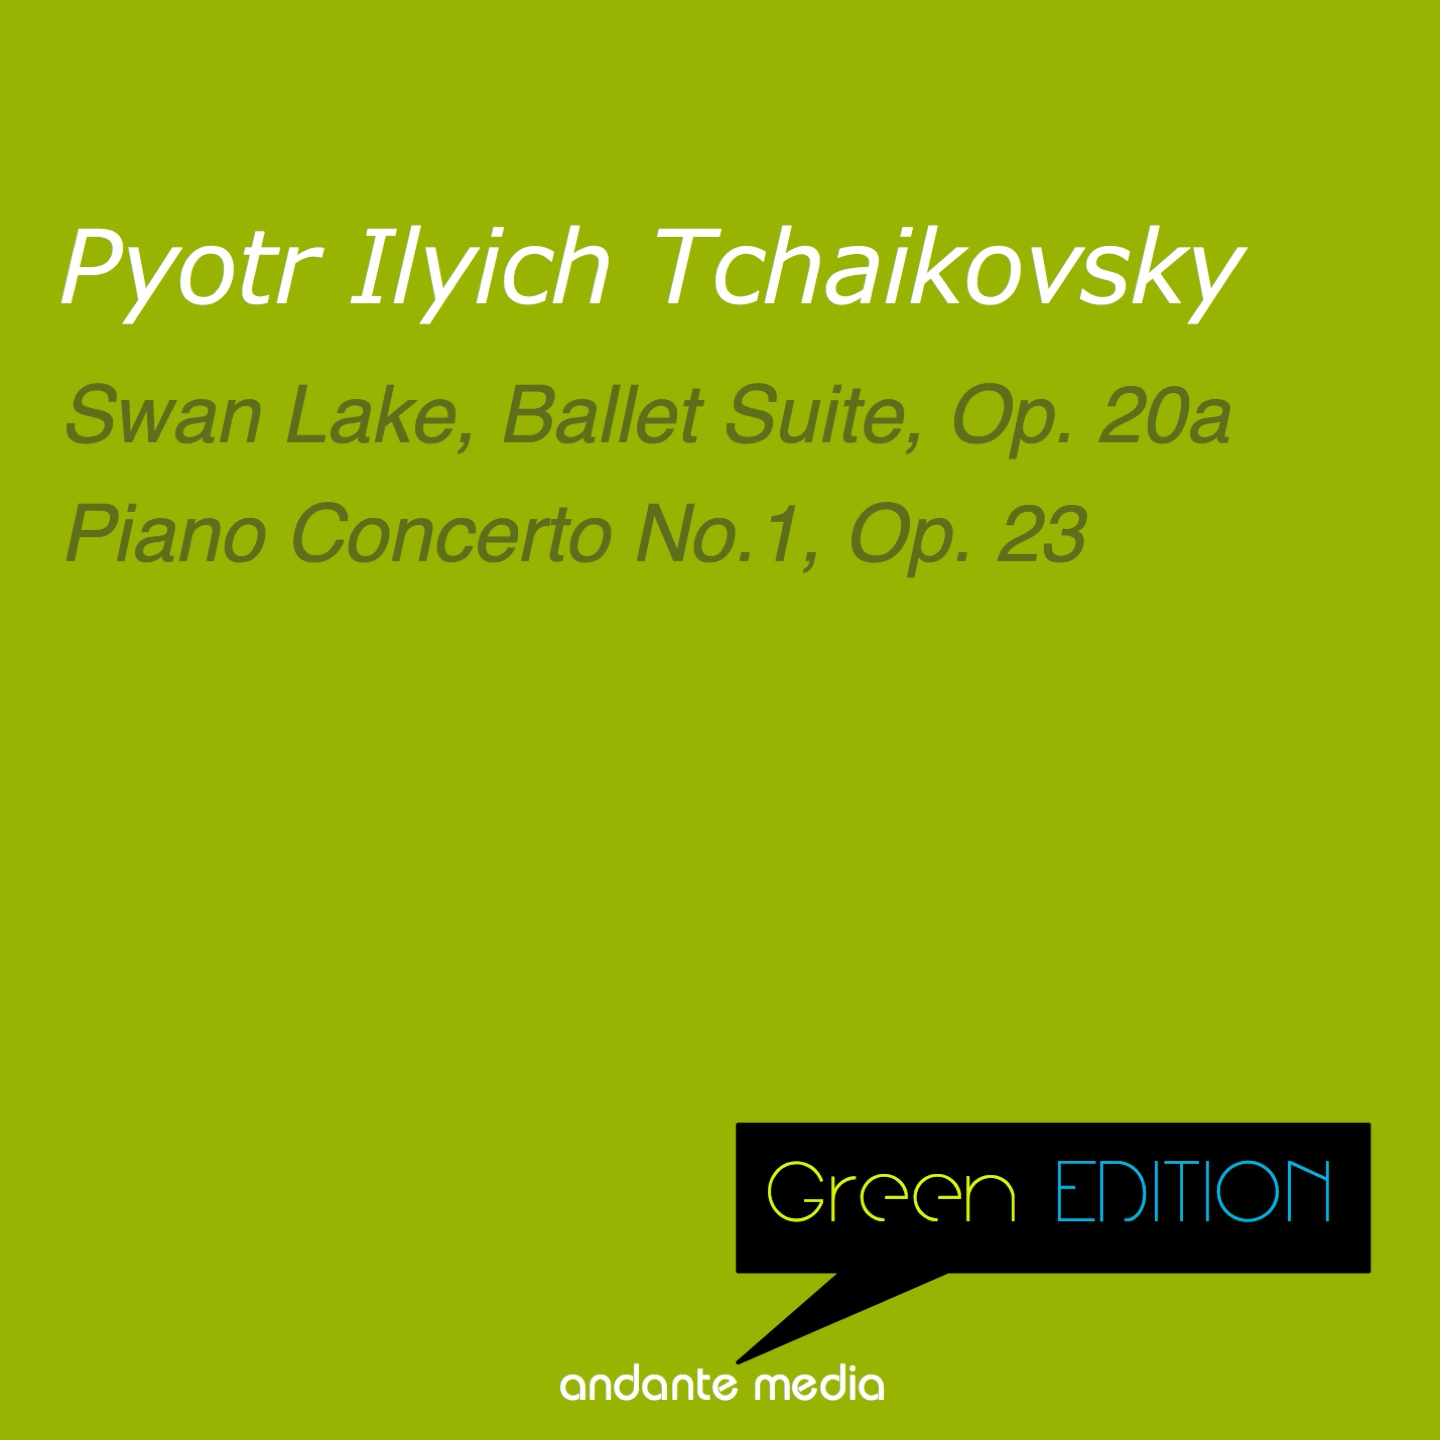 Piano Concerto No.1, Op. 23: III. Allegro con fuoco (1888 Version)